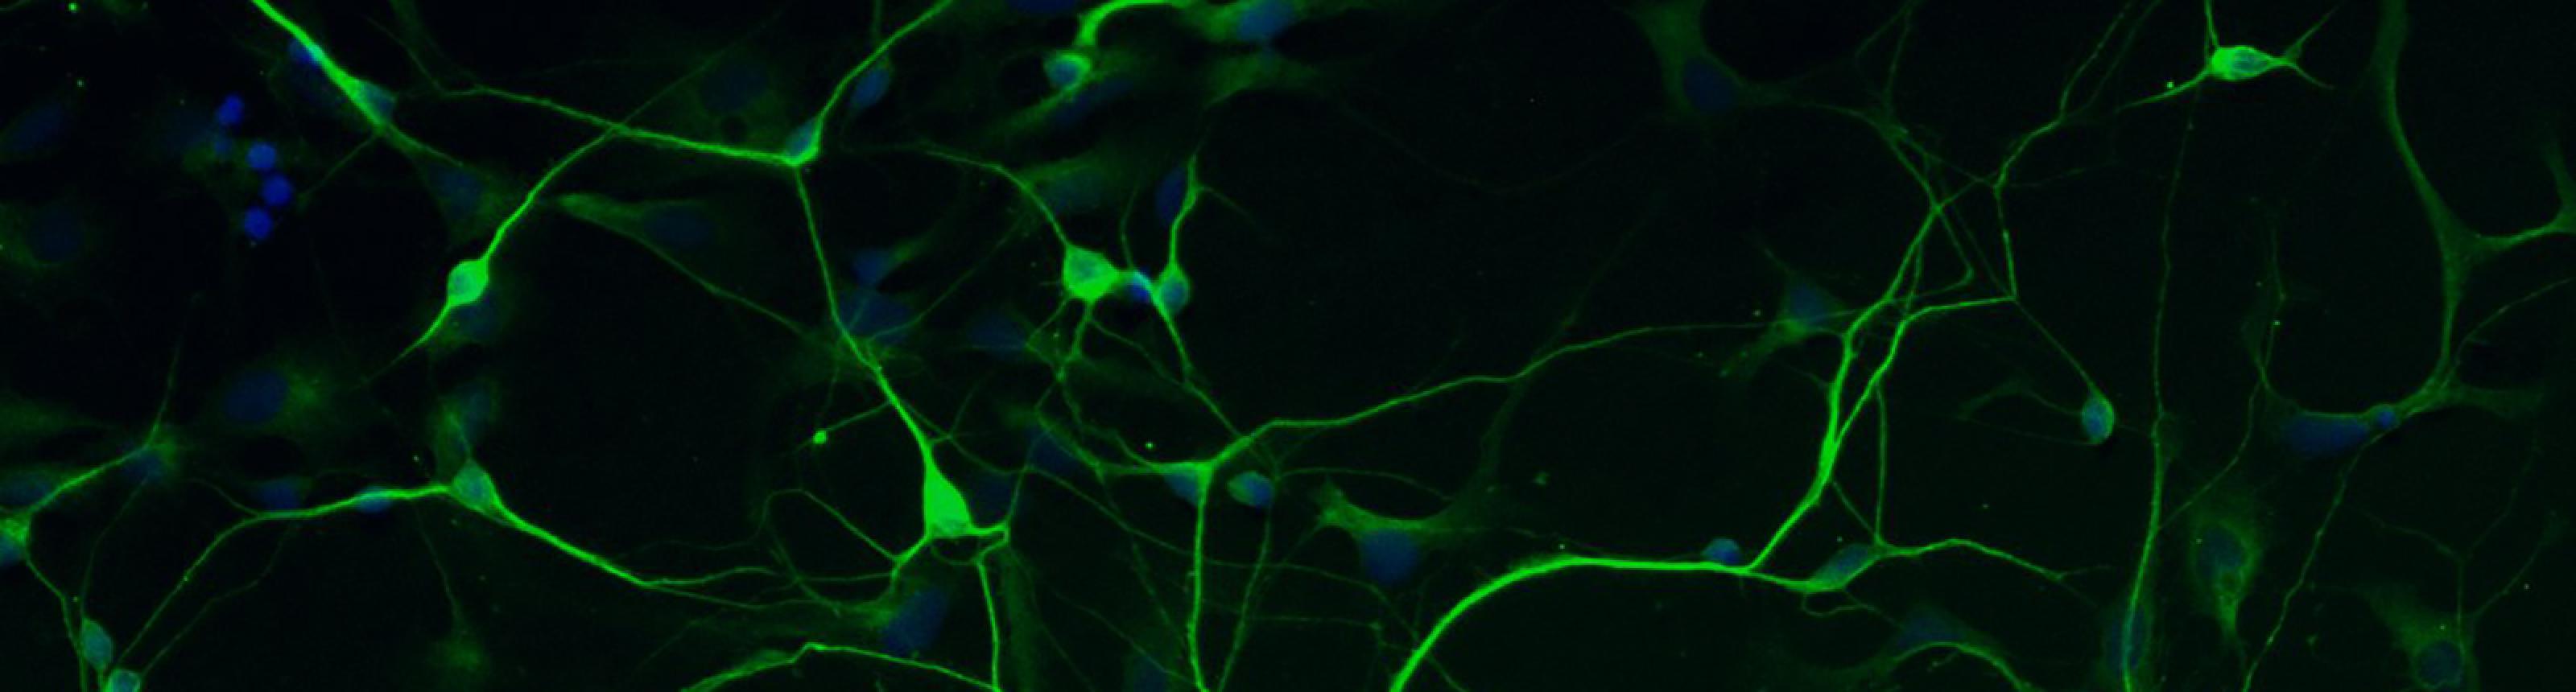 Human stem cell derived neuron